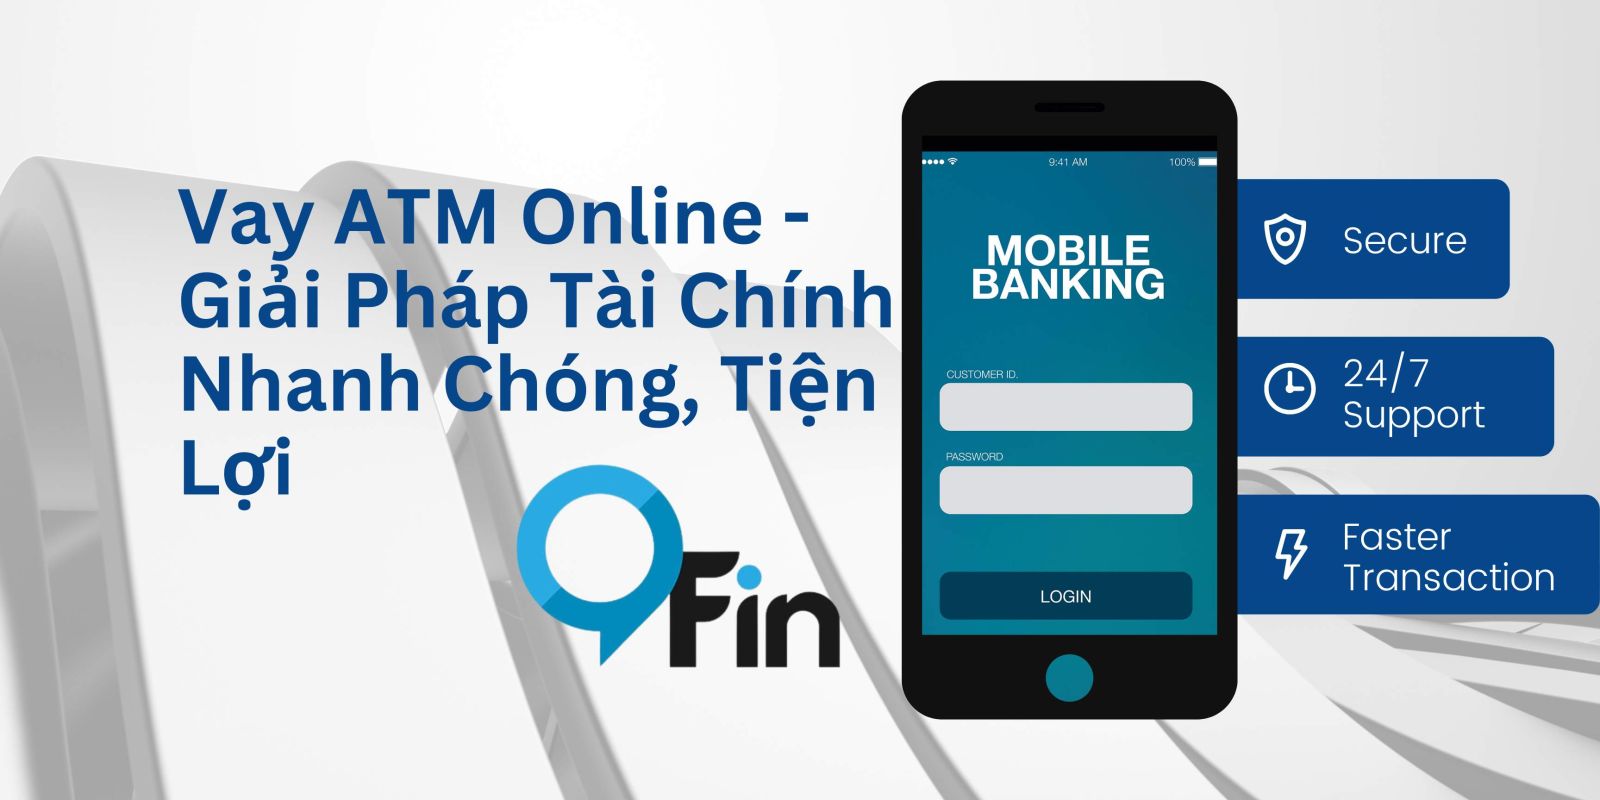 Vay ATM Online - Giải Pháp Tài Chính Nhanh Chóng, Tiện Lợi